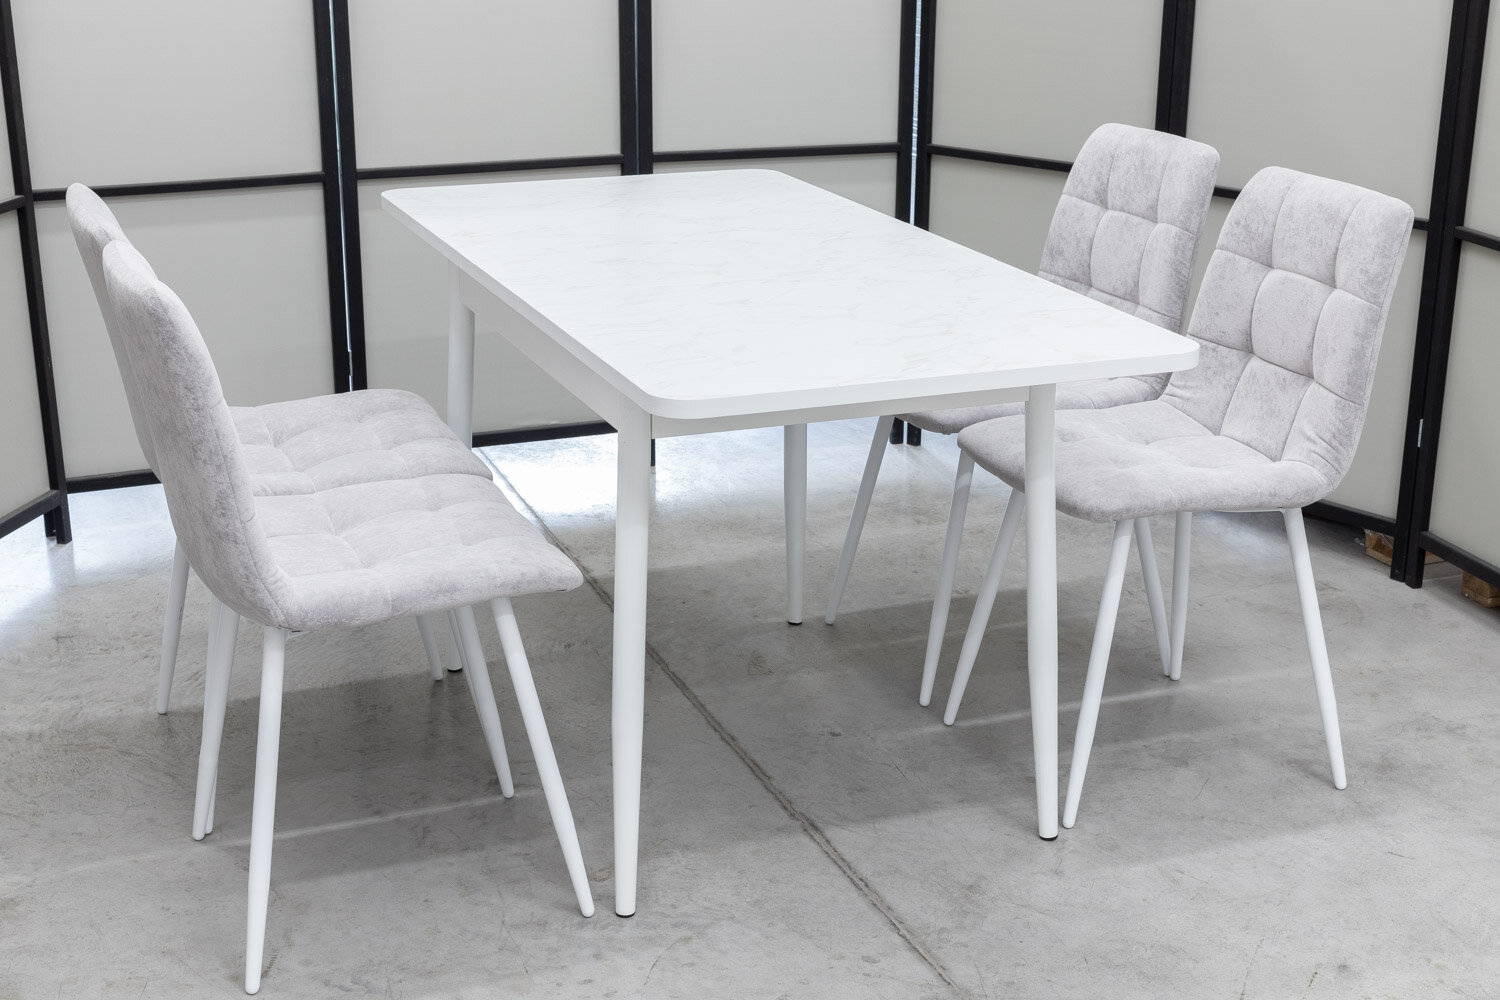 Обеденная группа Ост Кватро, стол белый термопластик, 110(140)х70 см, обивка стульев антивандальная, моющаяся, антикоготь, цвет светло-серый - фотография № 12